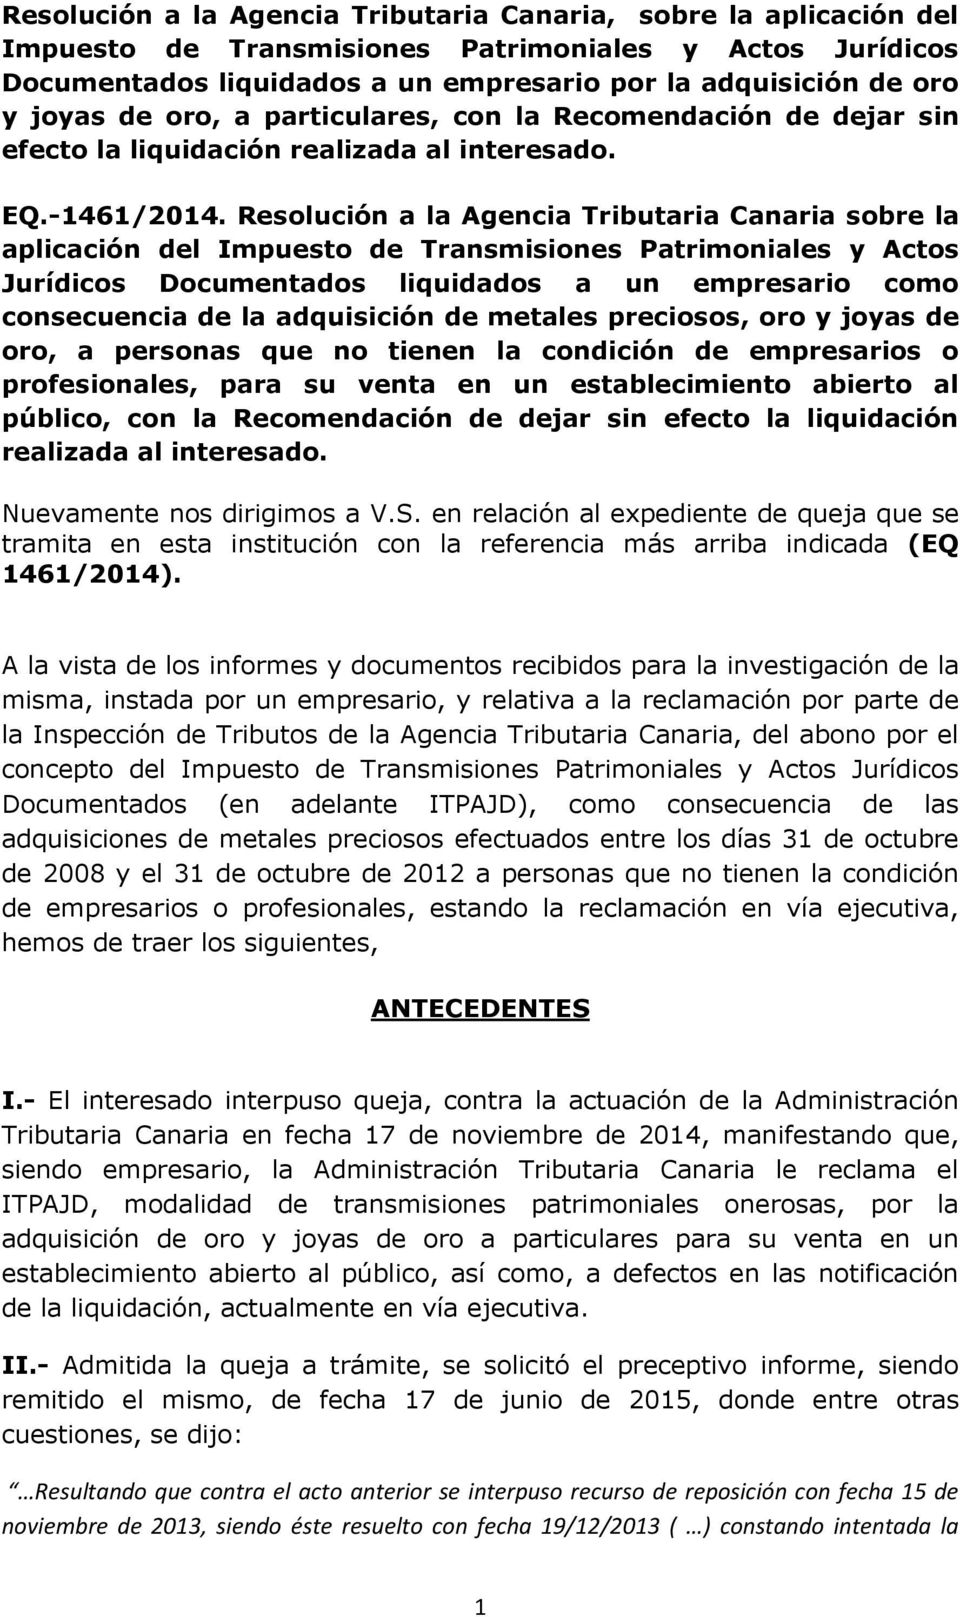 Resolución a la Agencia Tributaria Canaria sobre la aplicación del Impuesto de Transmisiones Patrimoniales y Actos Jurídicos Documentados liquidados a un empresario como consecuencia de la